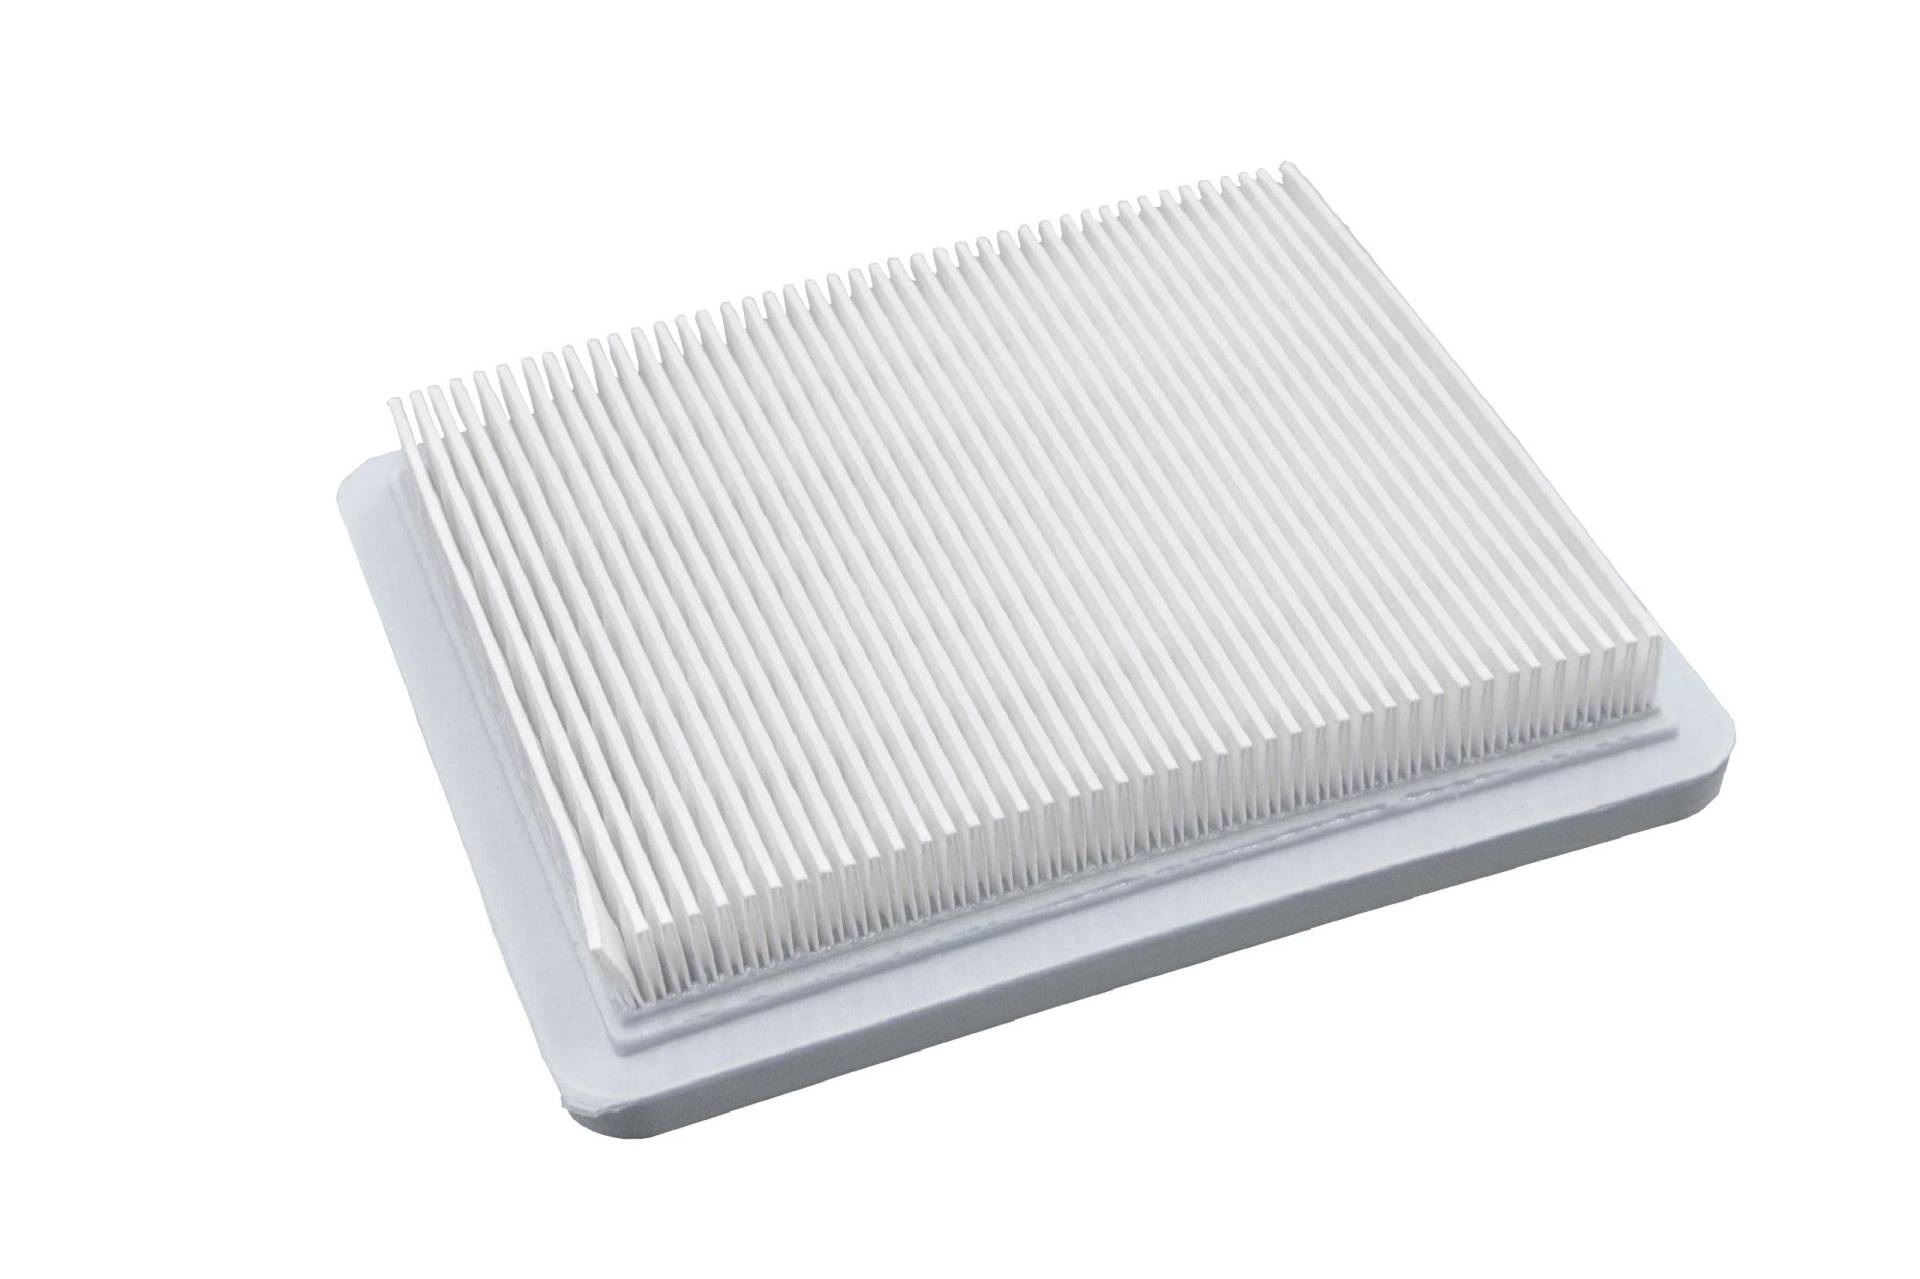 vhbw Papier-Luftfilter Ersatzfilter kompatibel mit Stiga Multiclip 53, Turbo 53 S Rasenmäher, 13,2 x 11,5 x 2,1 cm, Weiß von vhbw